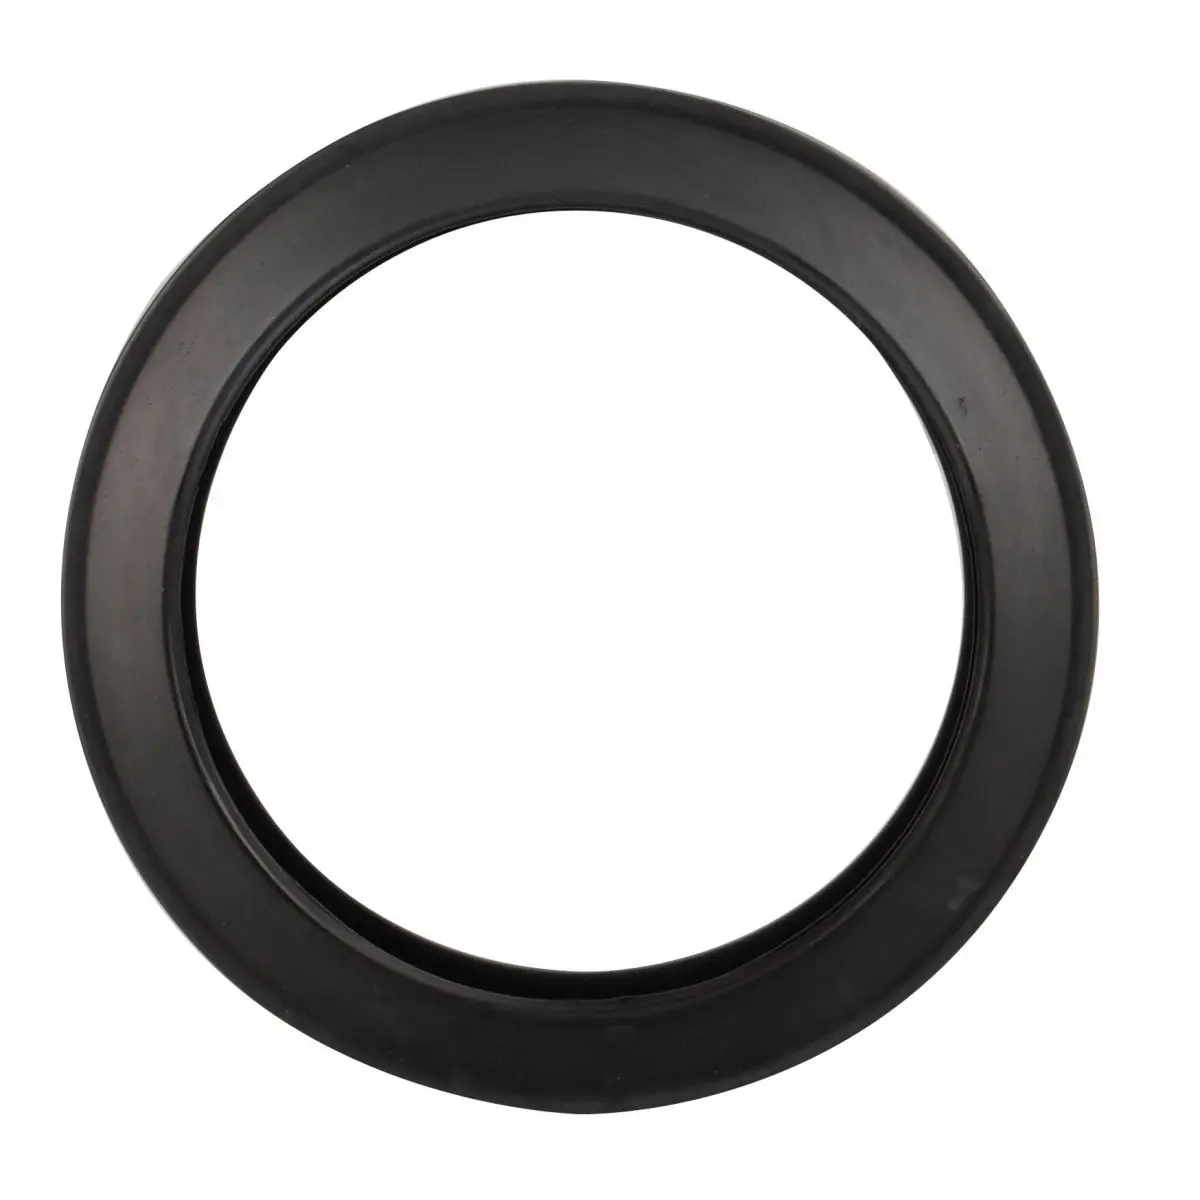 Inel de etanșare - negru pentru Porta Potti 145/165